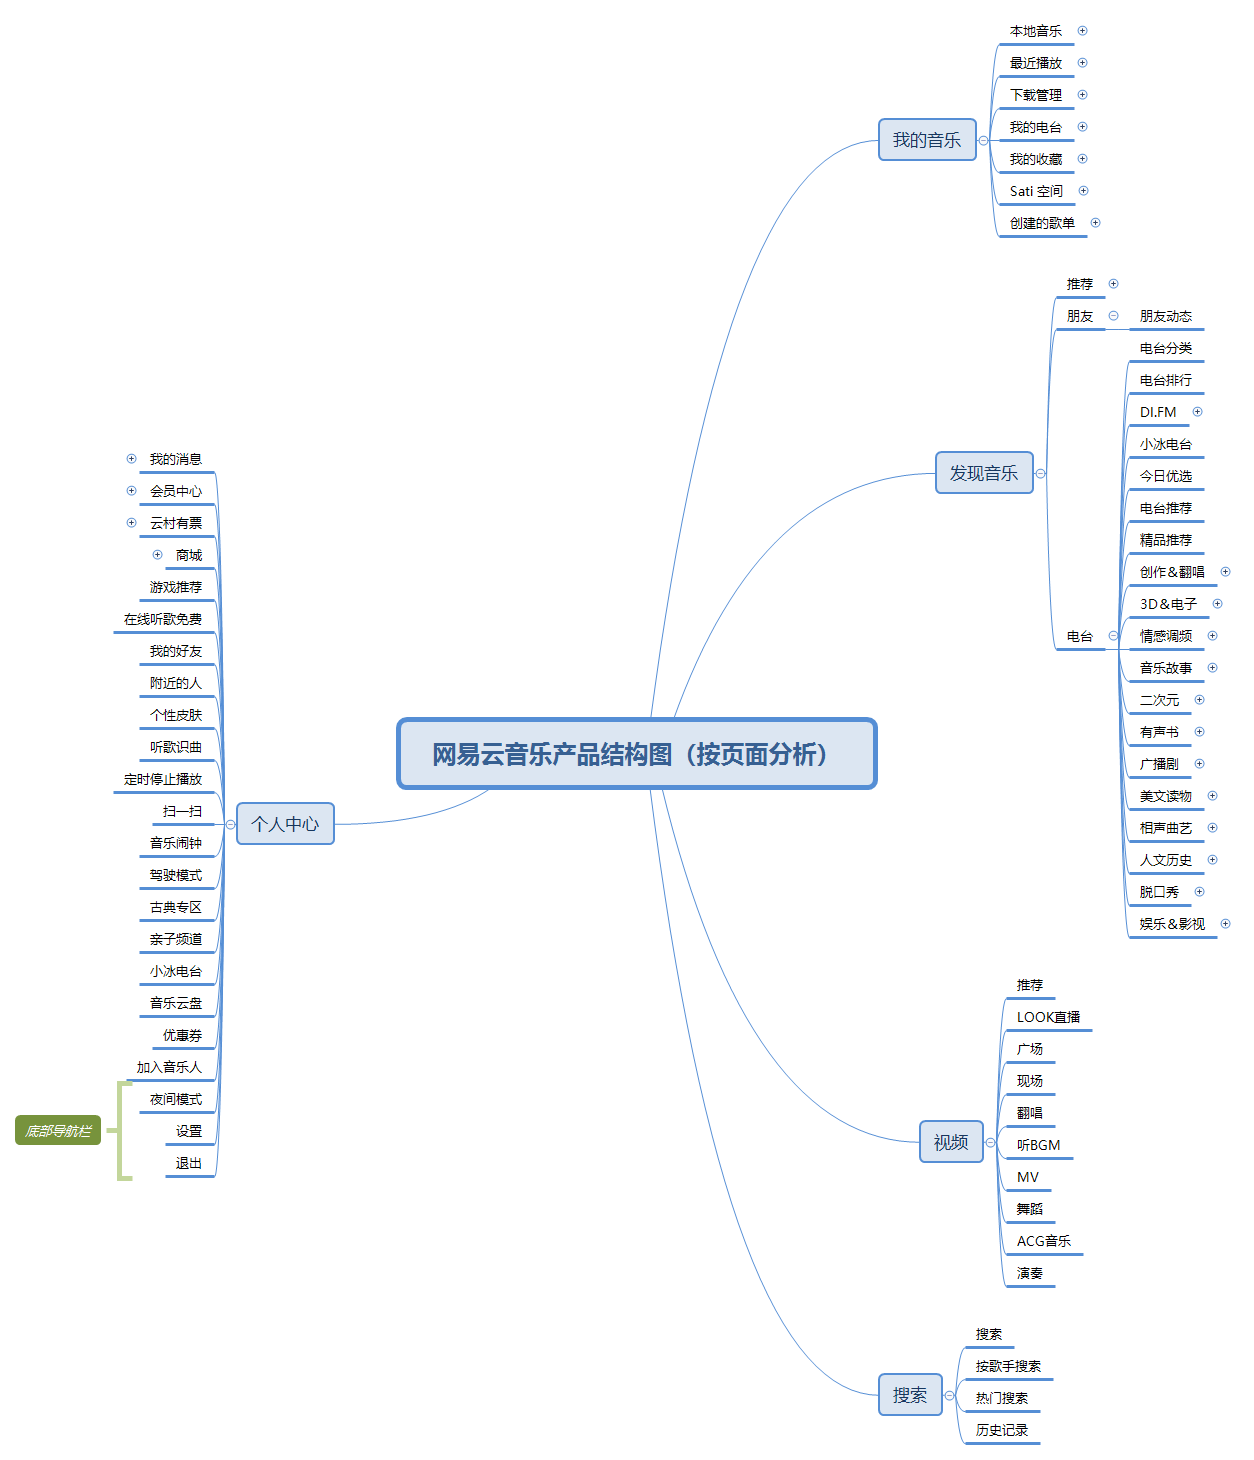 图十二 网易云音乐产品结构图(按页面分析)